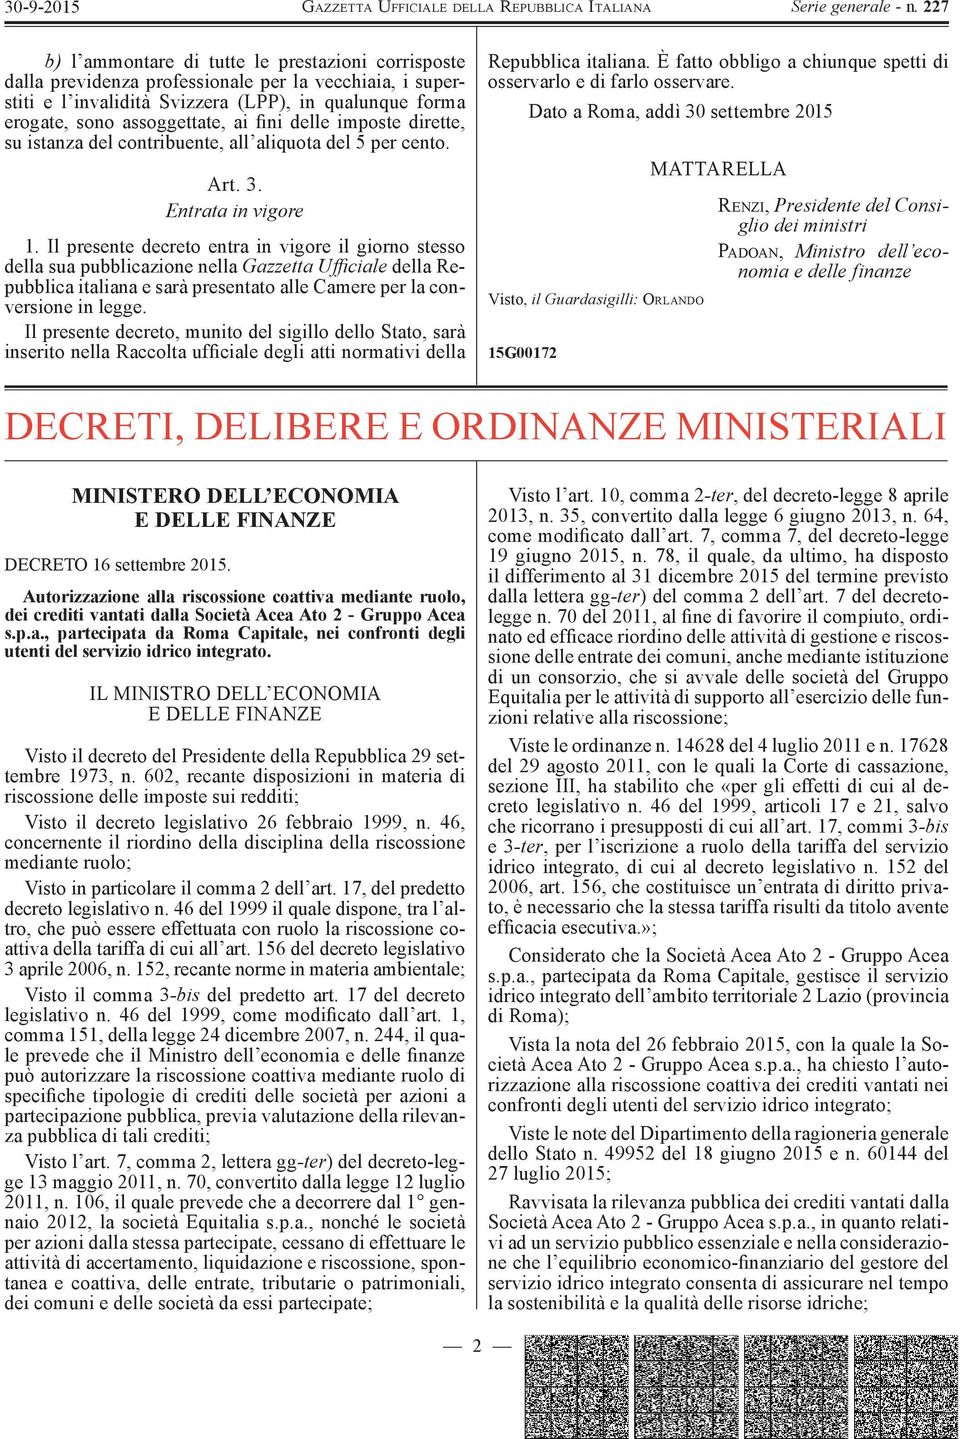 Il presente decreto entra in vigore il giorno stesso della sua pubblicazione nella Gazzetta Ufficiale della Repubblica italiana e sarà presentato alle Camere per la conversione in legge.